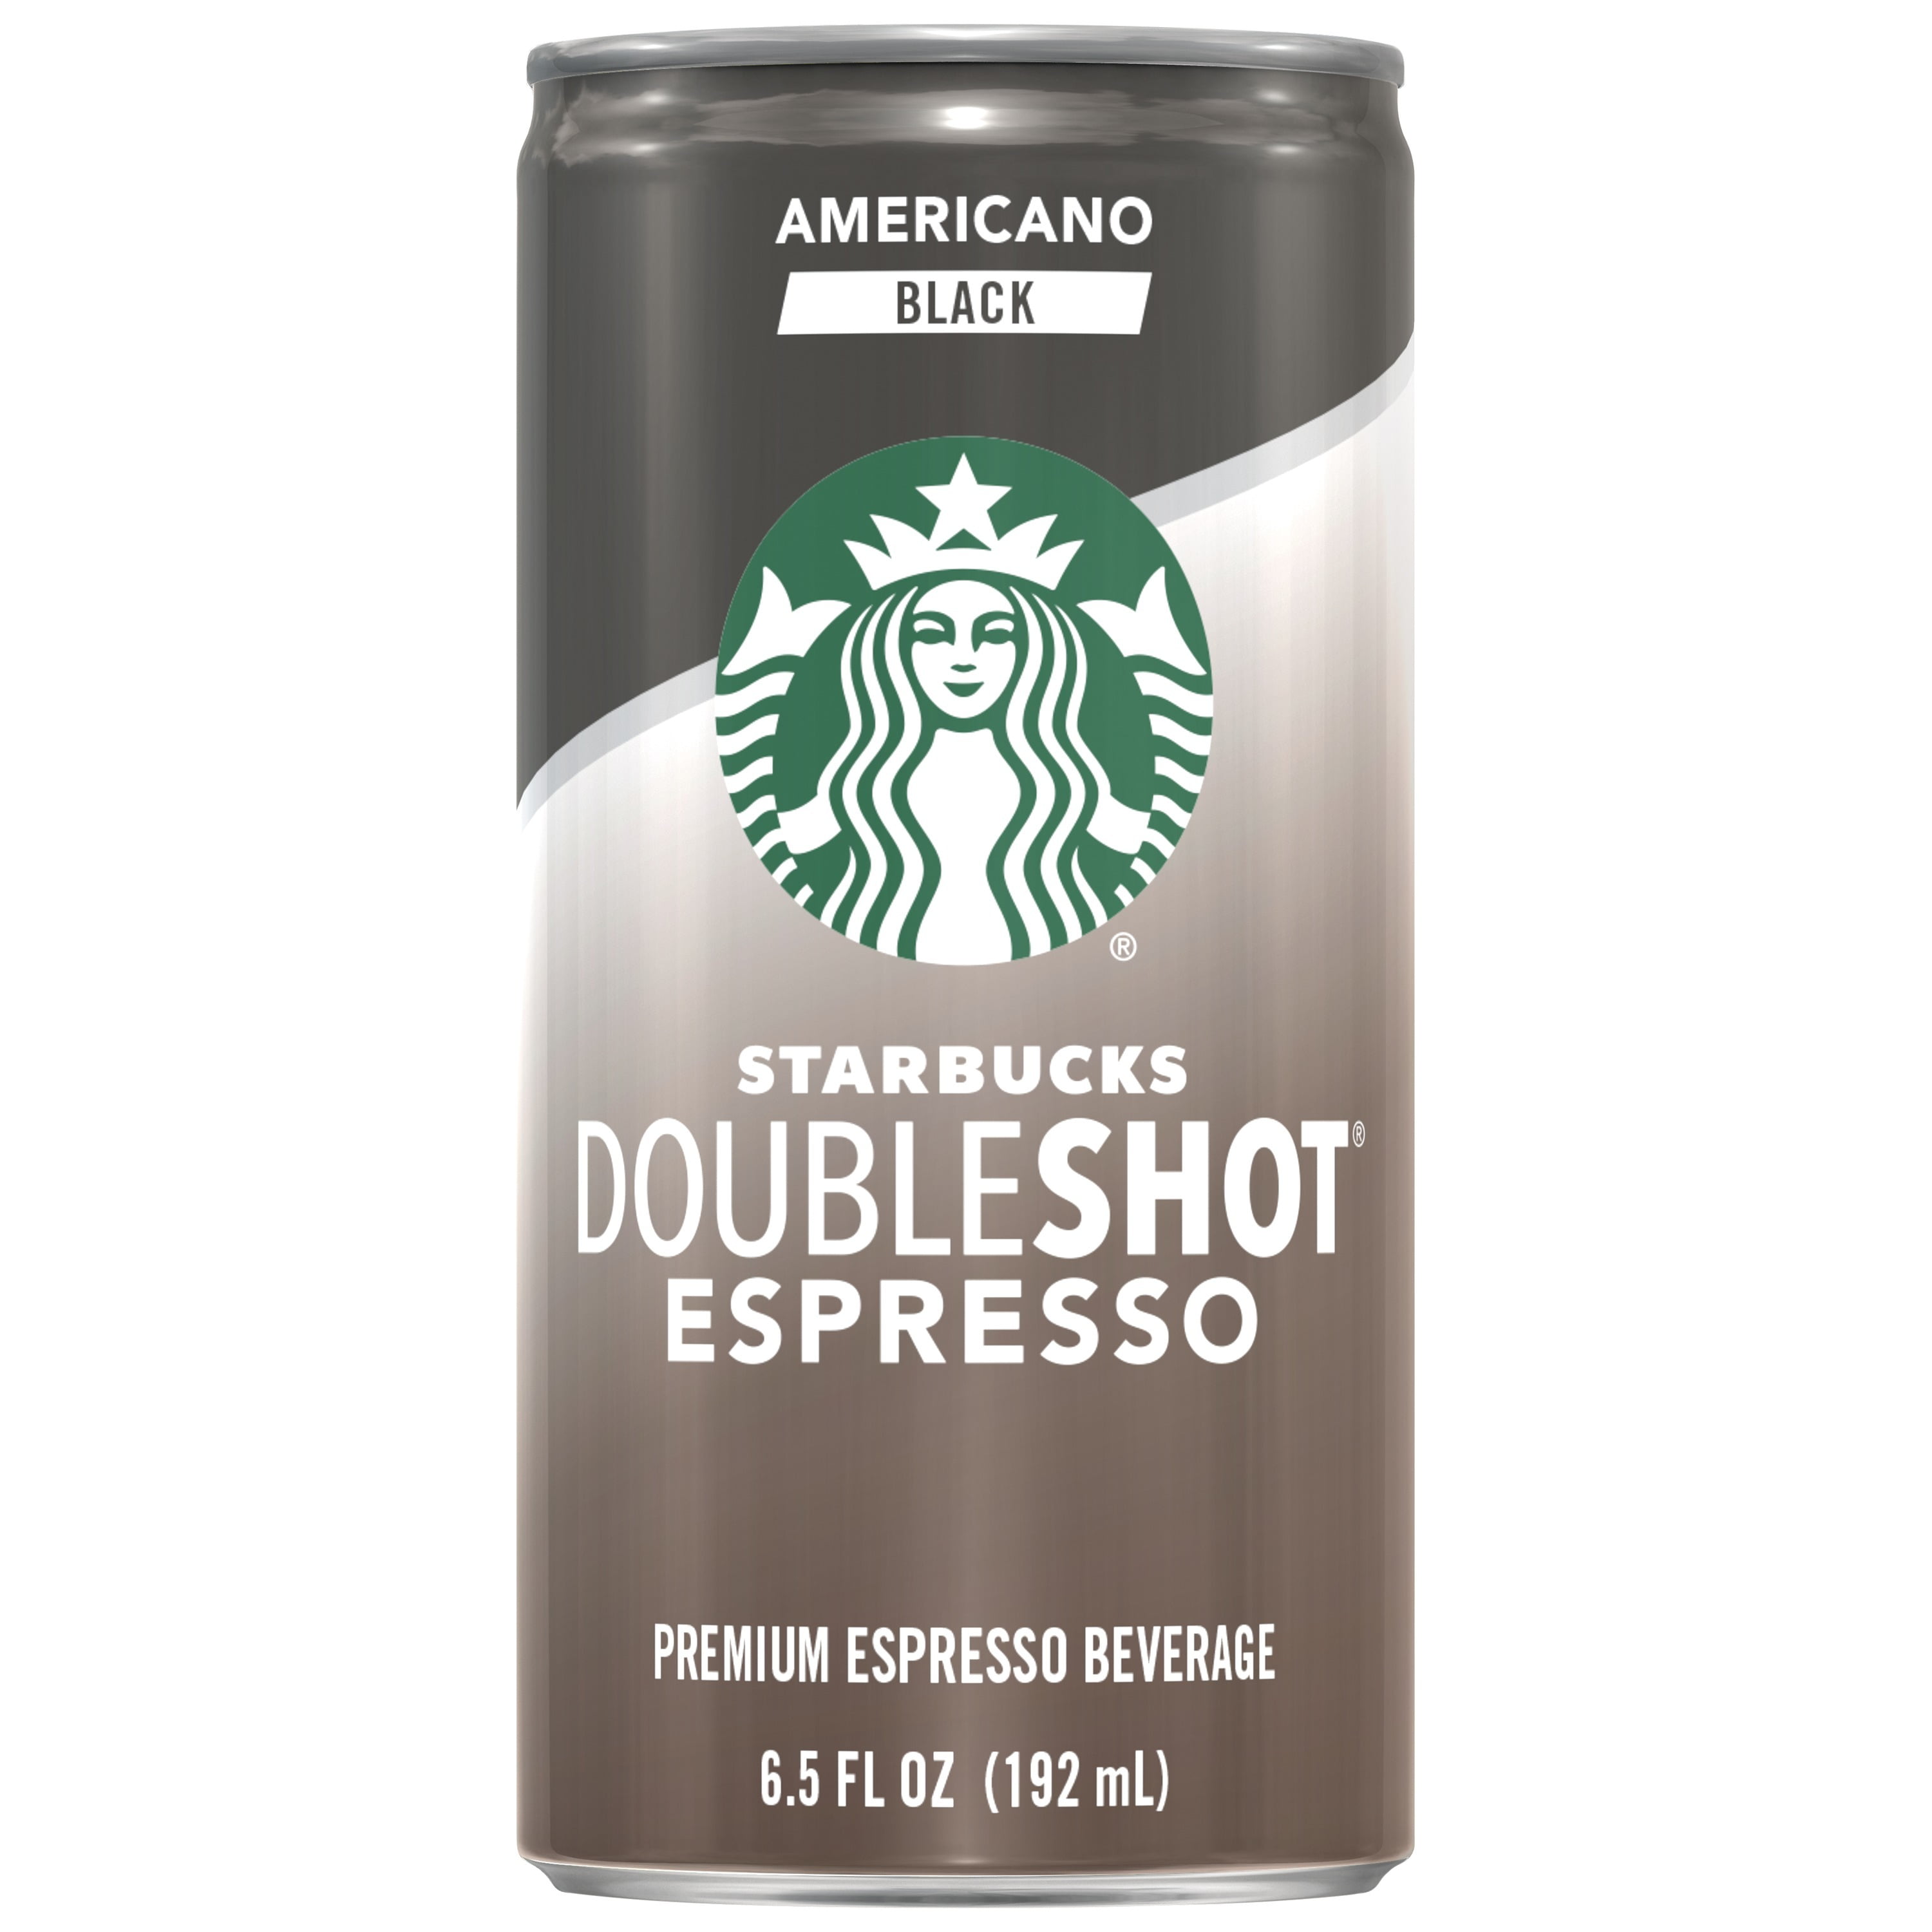 (12Cans) Starbucks Doubleshot Espresso, Americano Black